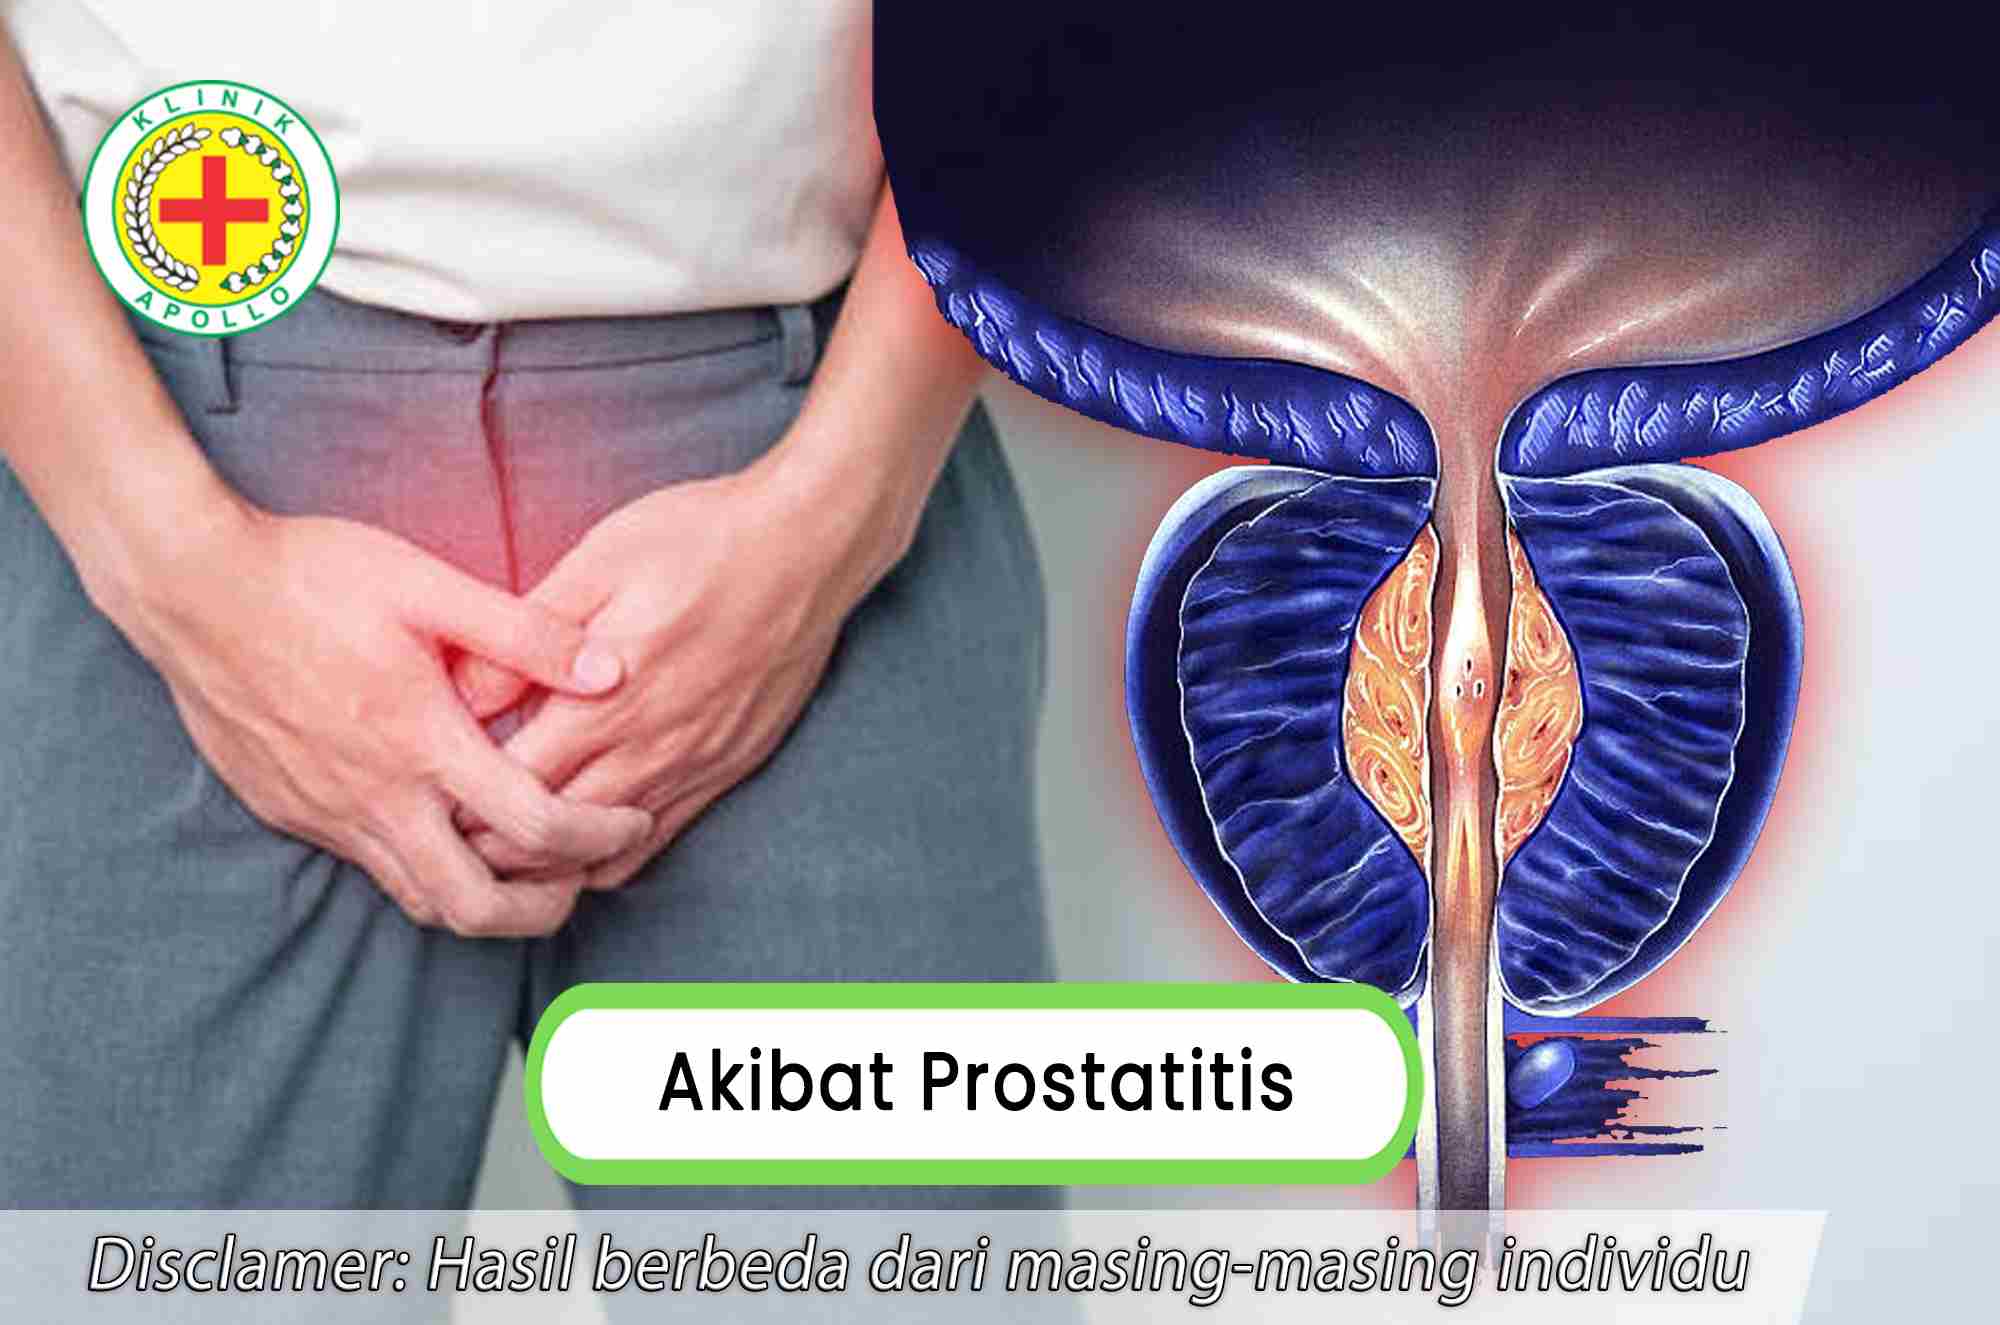 Selalu konsultasikan dengan dokter ahli andrologi untuk mengetahui akibat prostatitis pada pria.